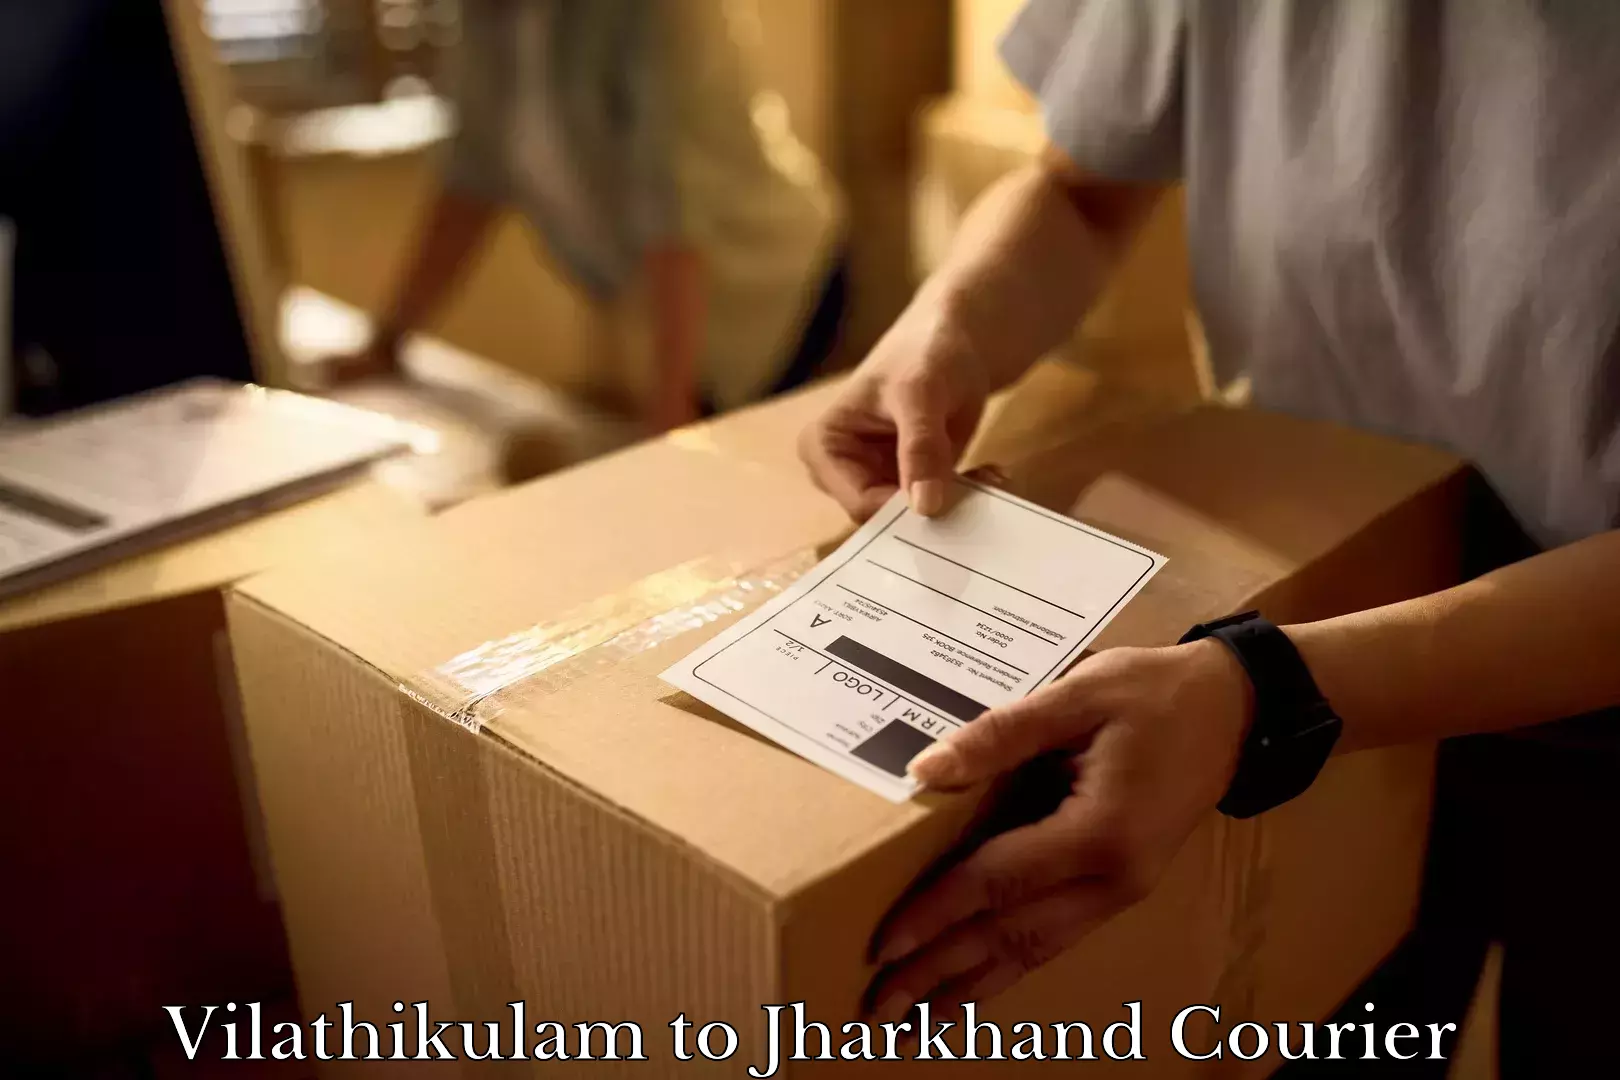 Furniture moving assistance in Vilathikulam to Chandankiyari